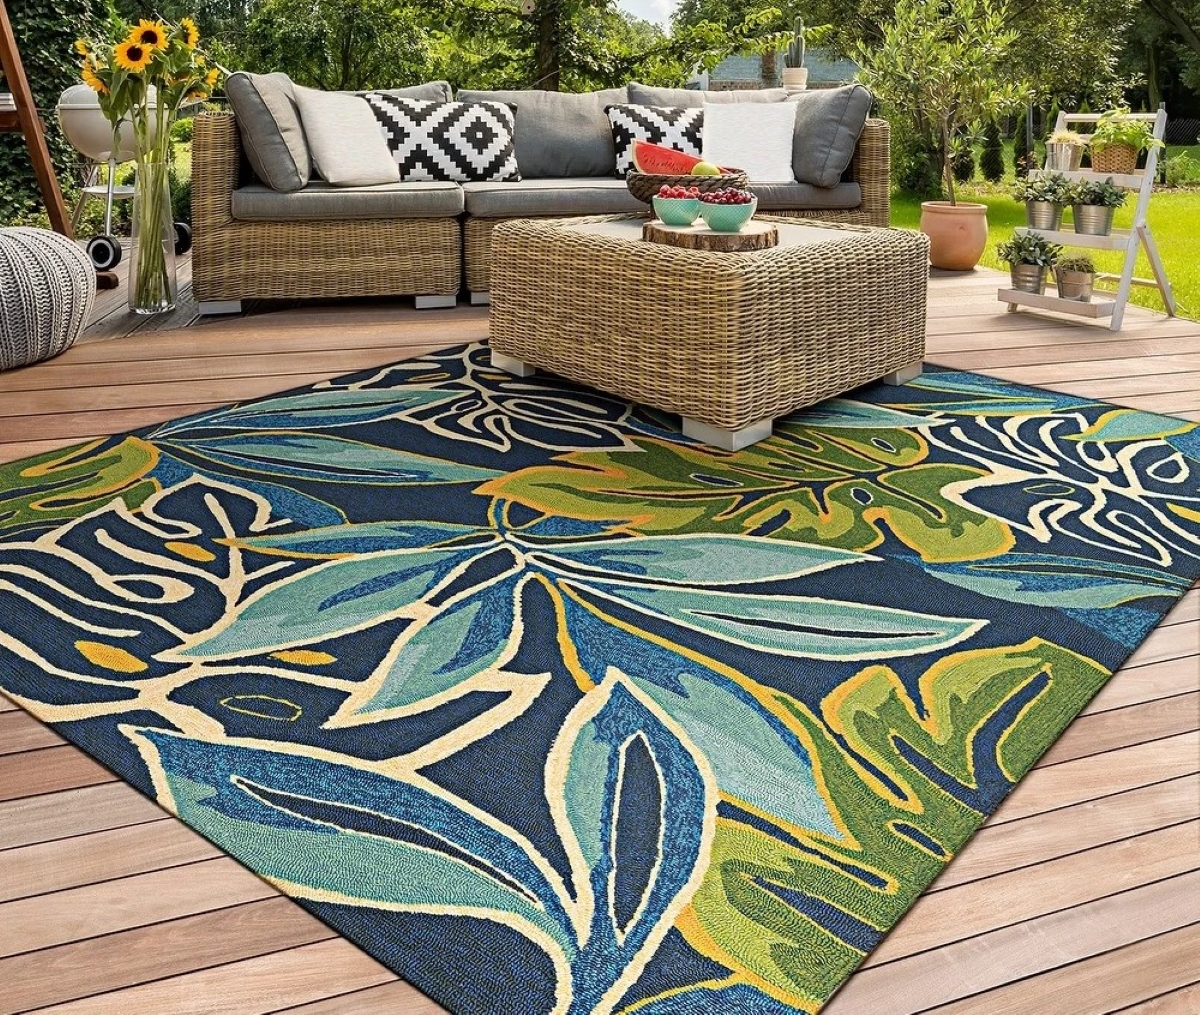 types of rugs - palm leaf print rug